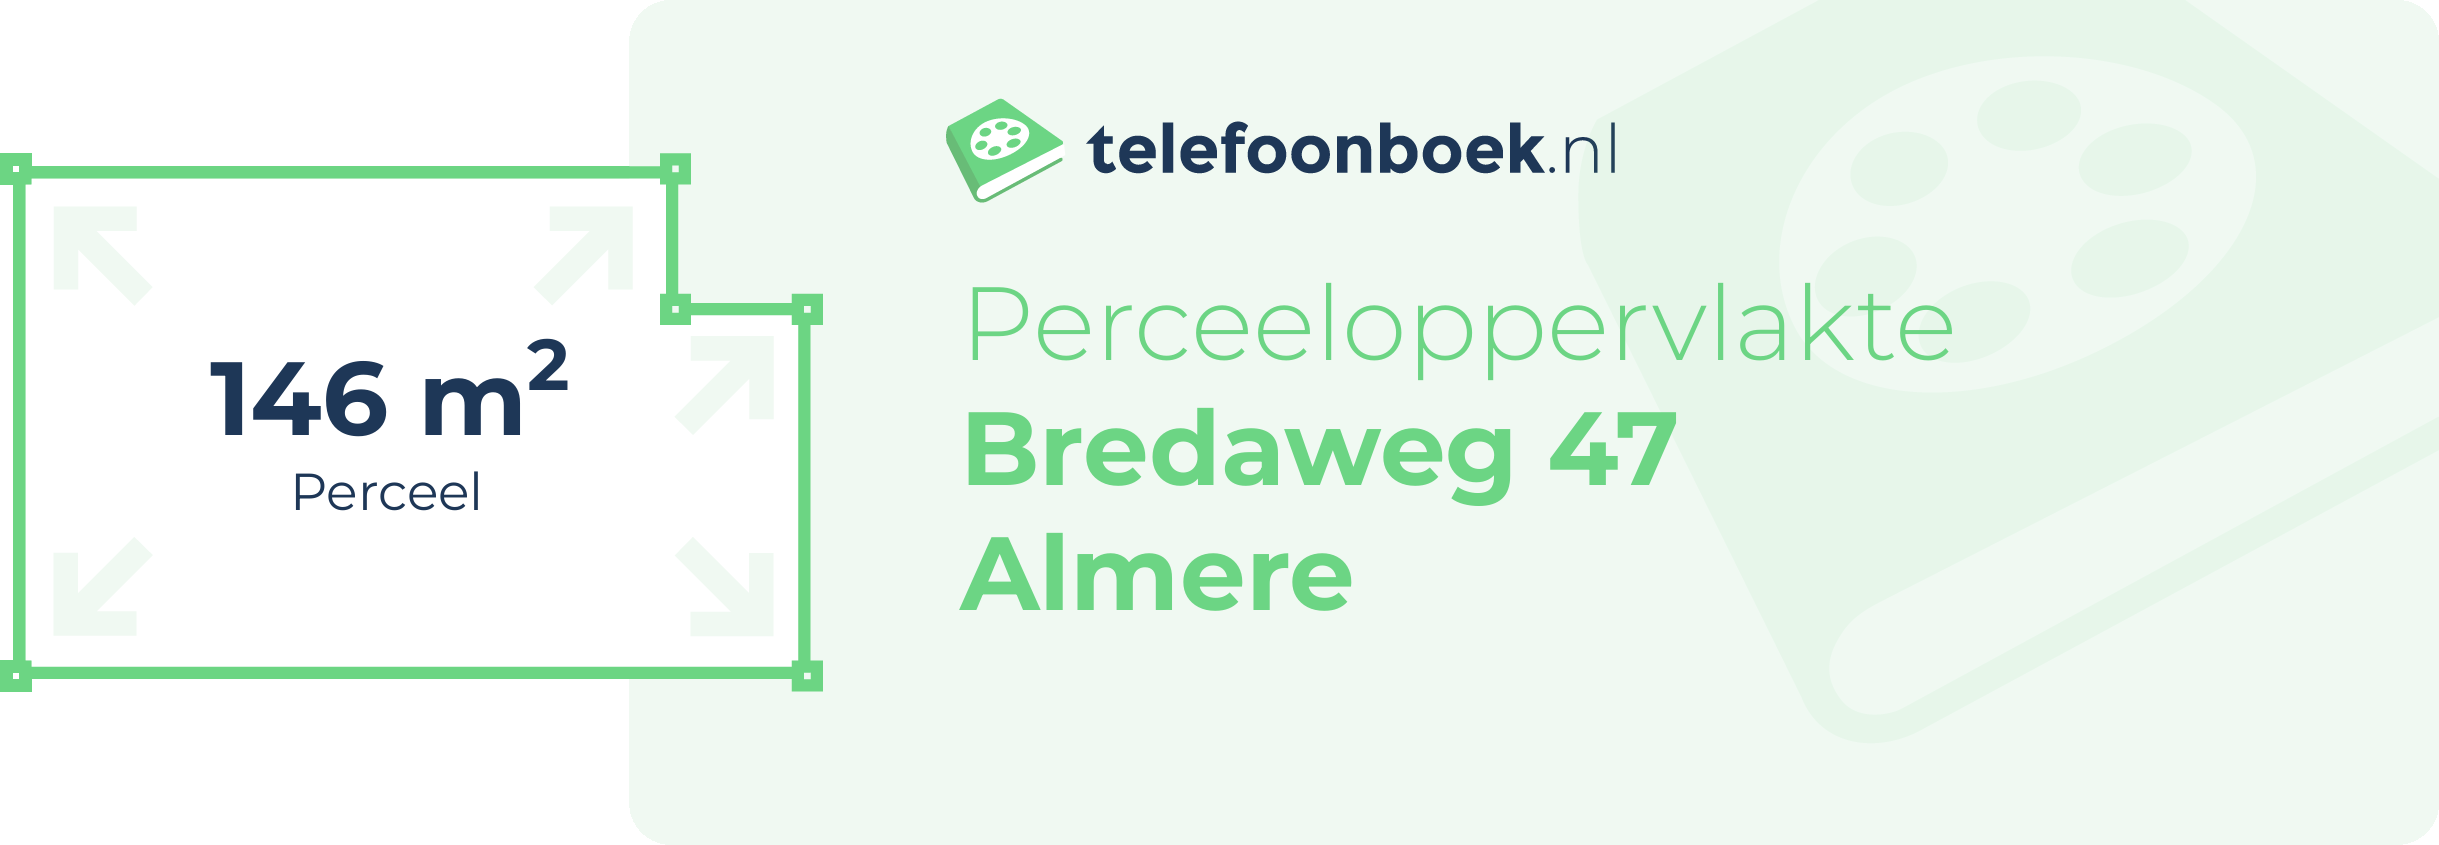 Perceeloppervlakte Bredaweg 47 Almere